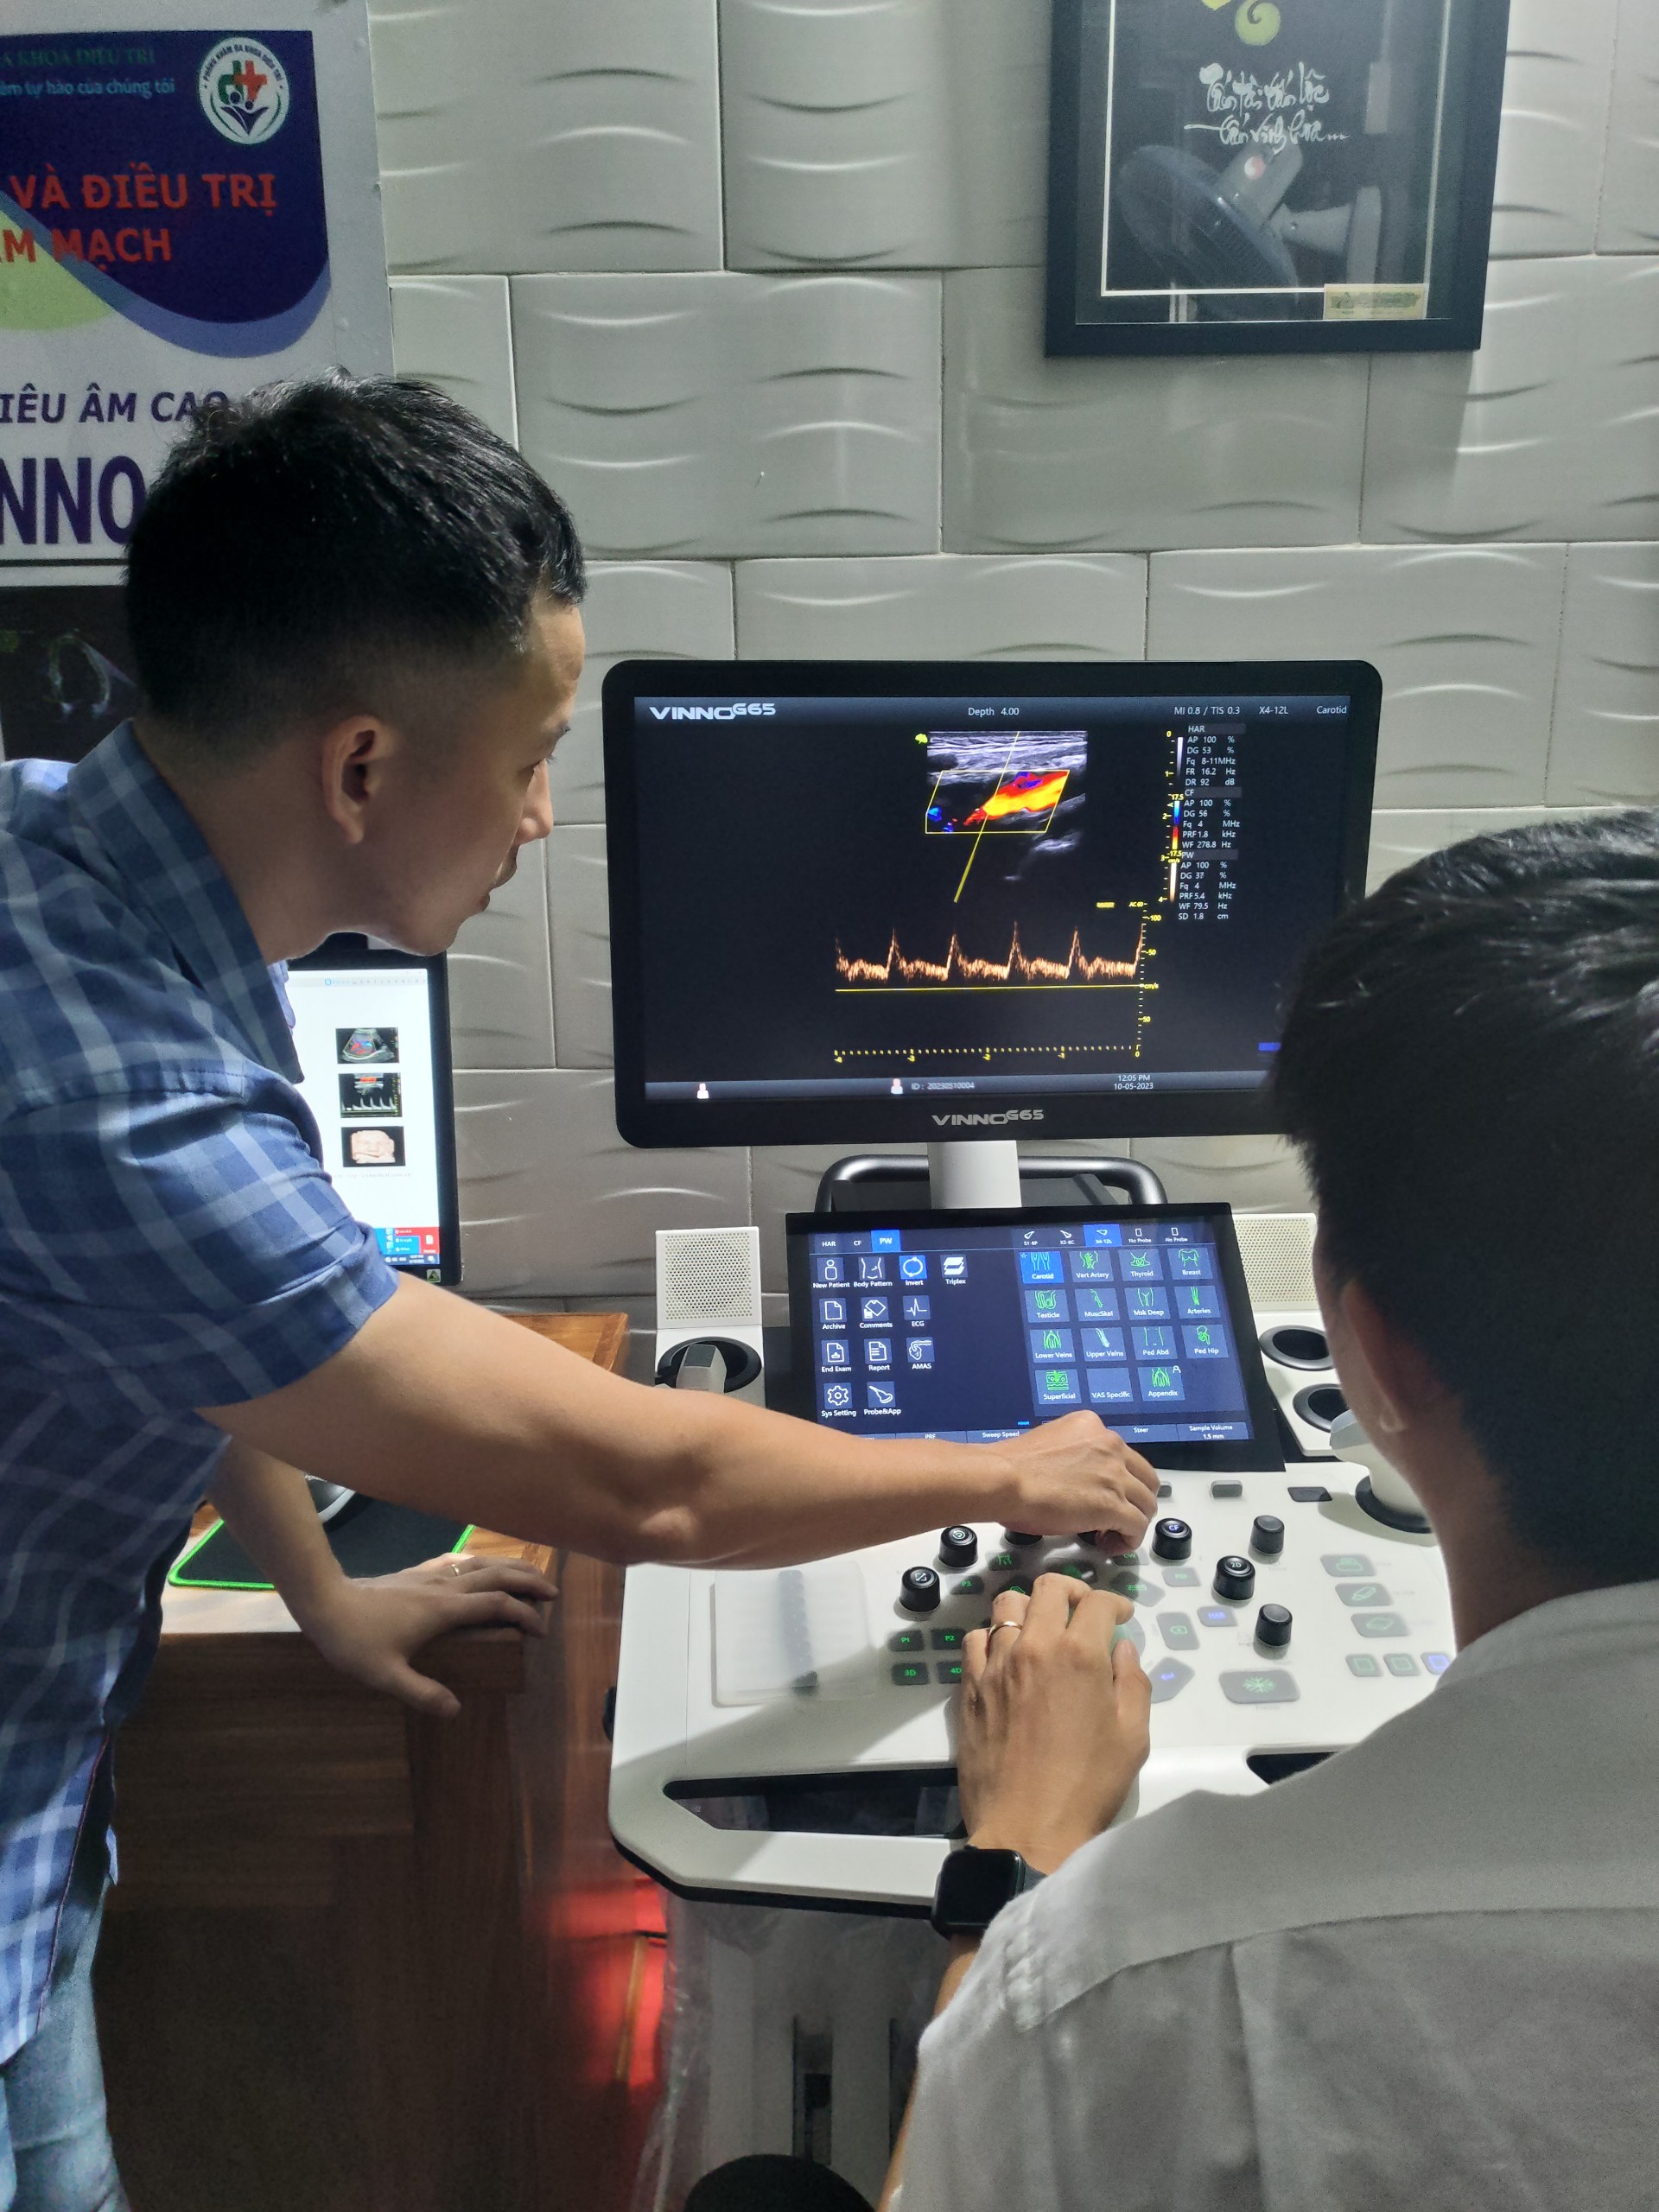 lắp máy siêu âm vinno g65 cao cấp cho bác sĩ tại Bình Định-1